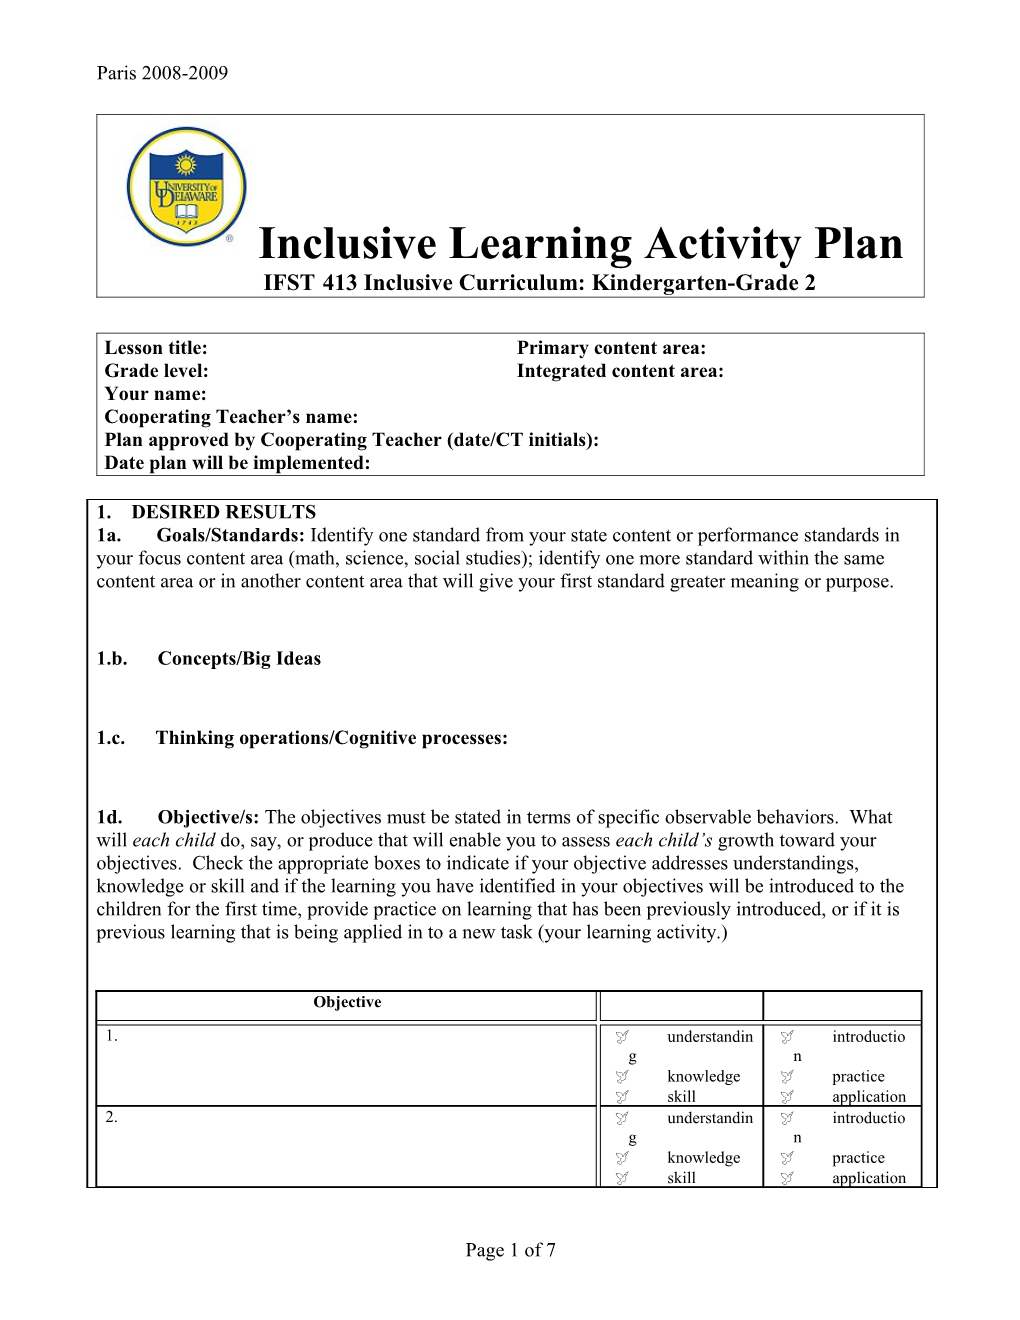 IFST413 Inclusive Curriculum: Kindergarten-Grade 2